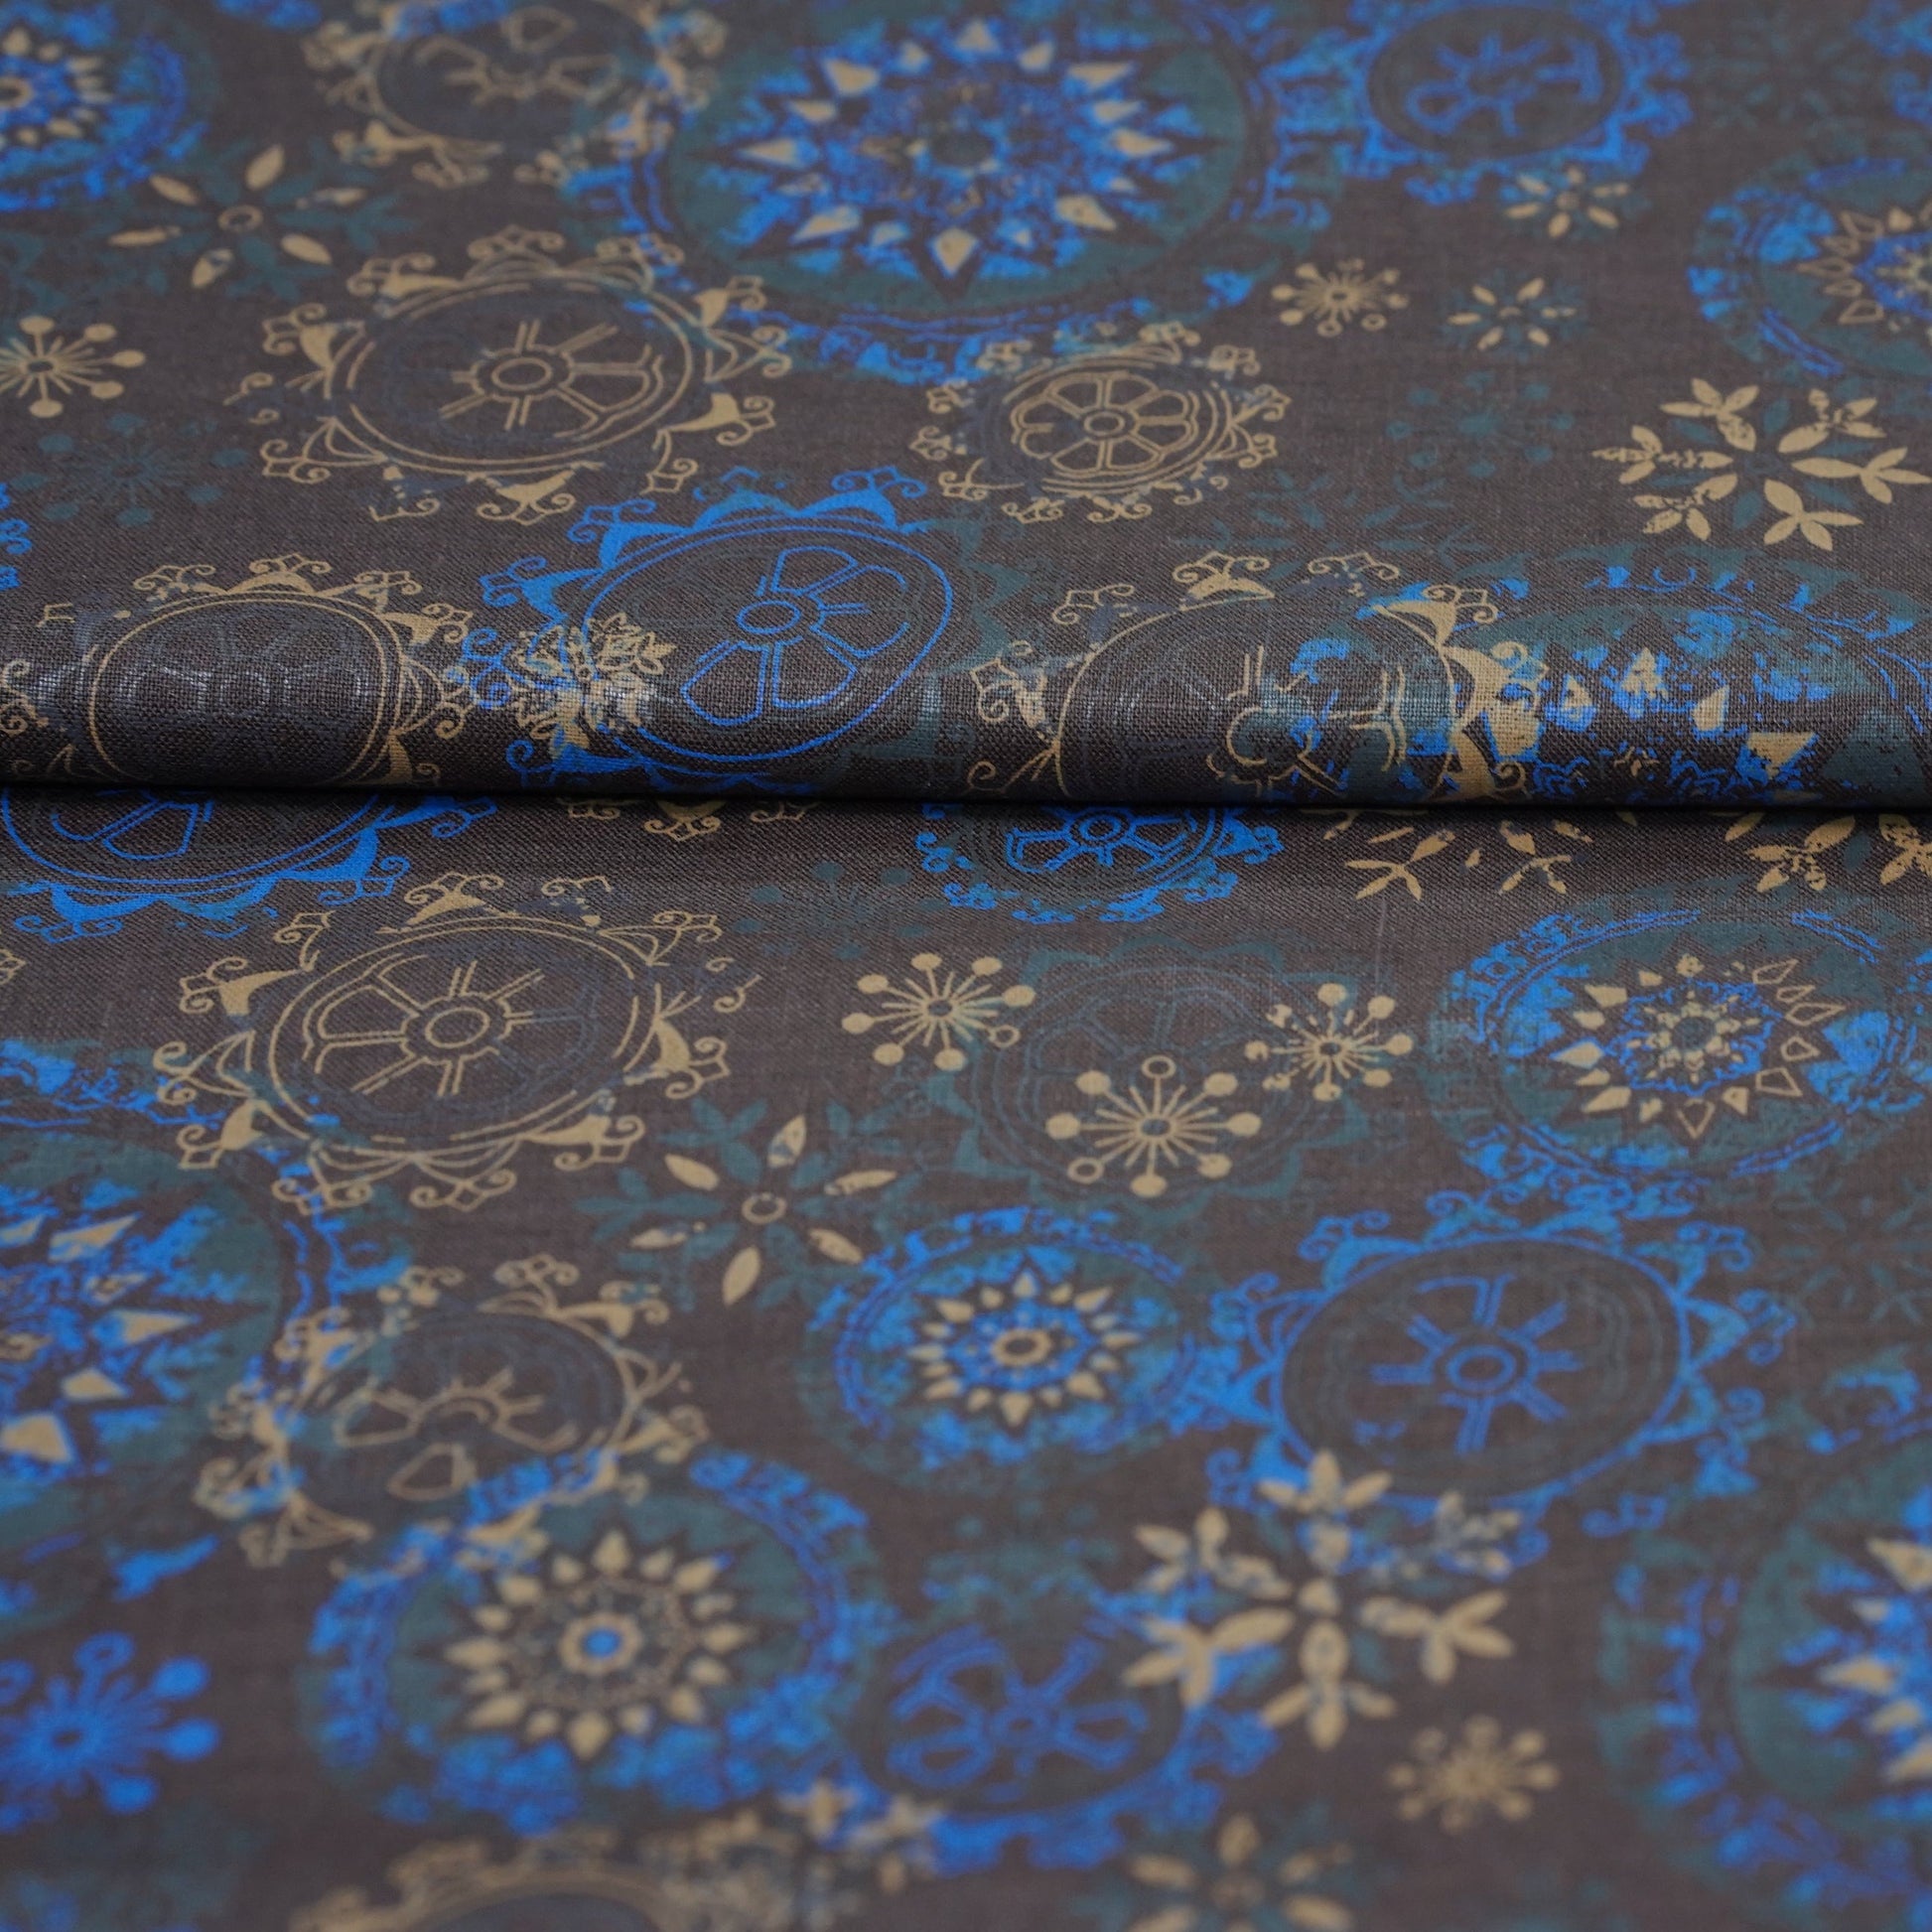 NAUTICAL Blue Linen Printed Shirt - OrganoLinen